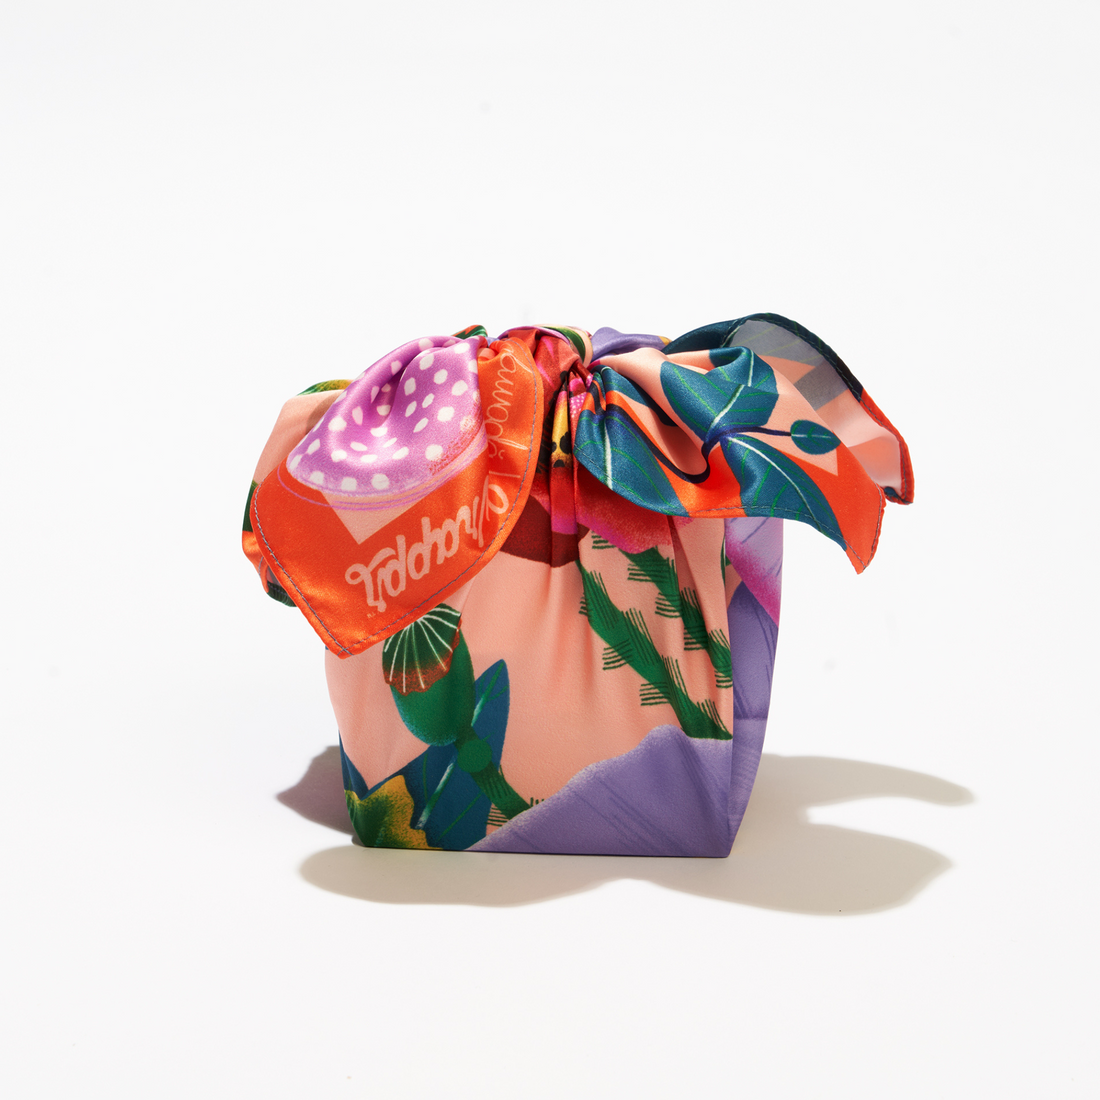 Daydream | 18" Furoshiki Gift Wrap by Corina Plamada